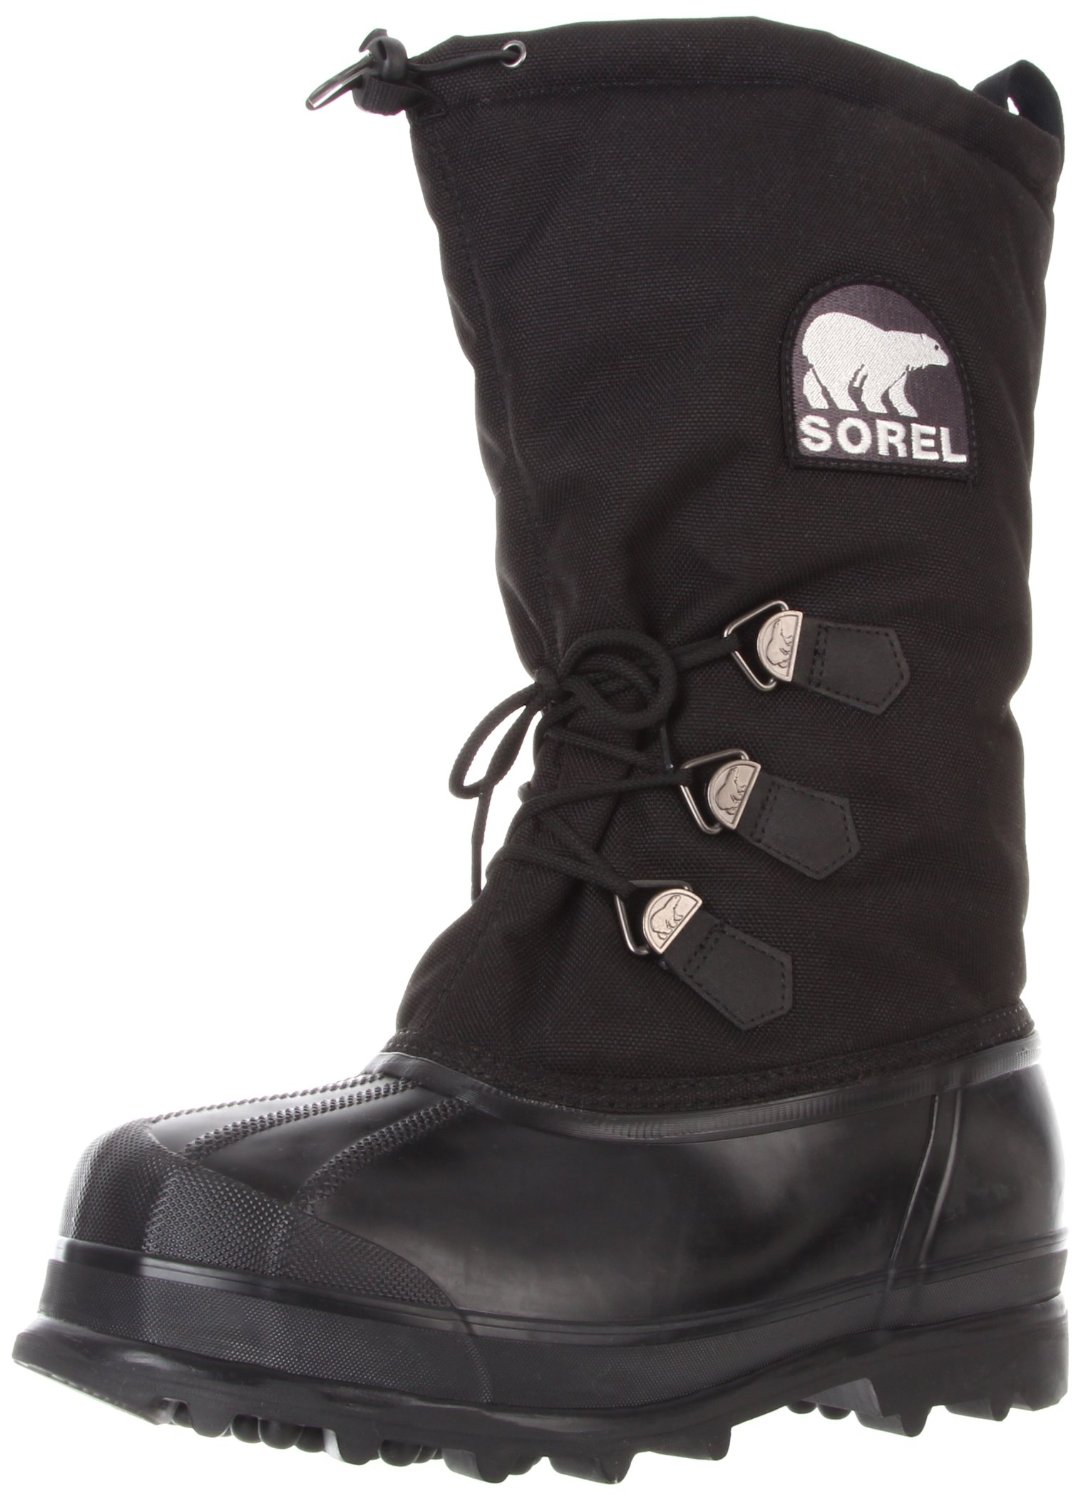 Sorel Men's Glacier Boot  $70.98